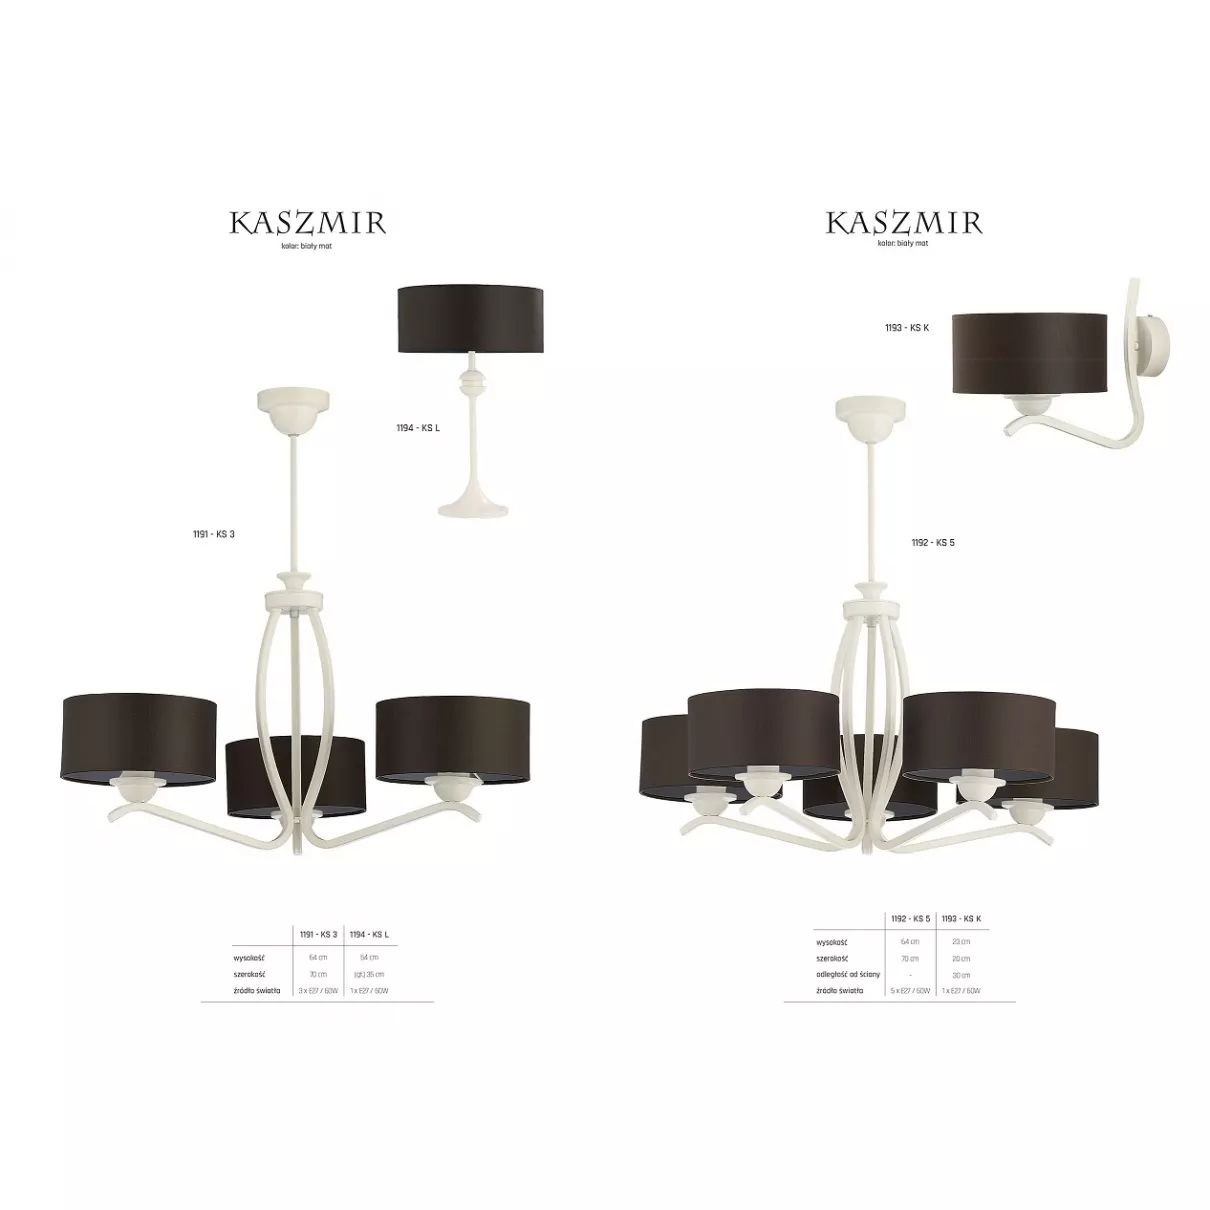 Kaszmir - Fali lámpa - Jupiter-1193-KSK B